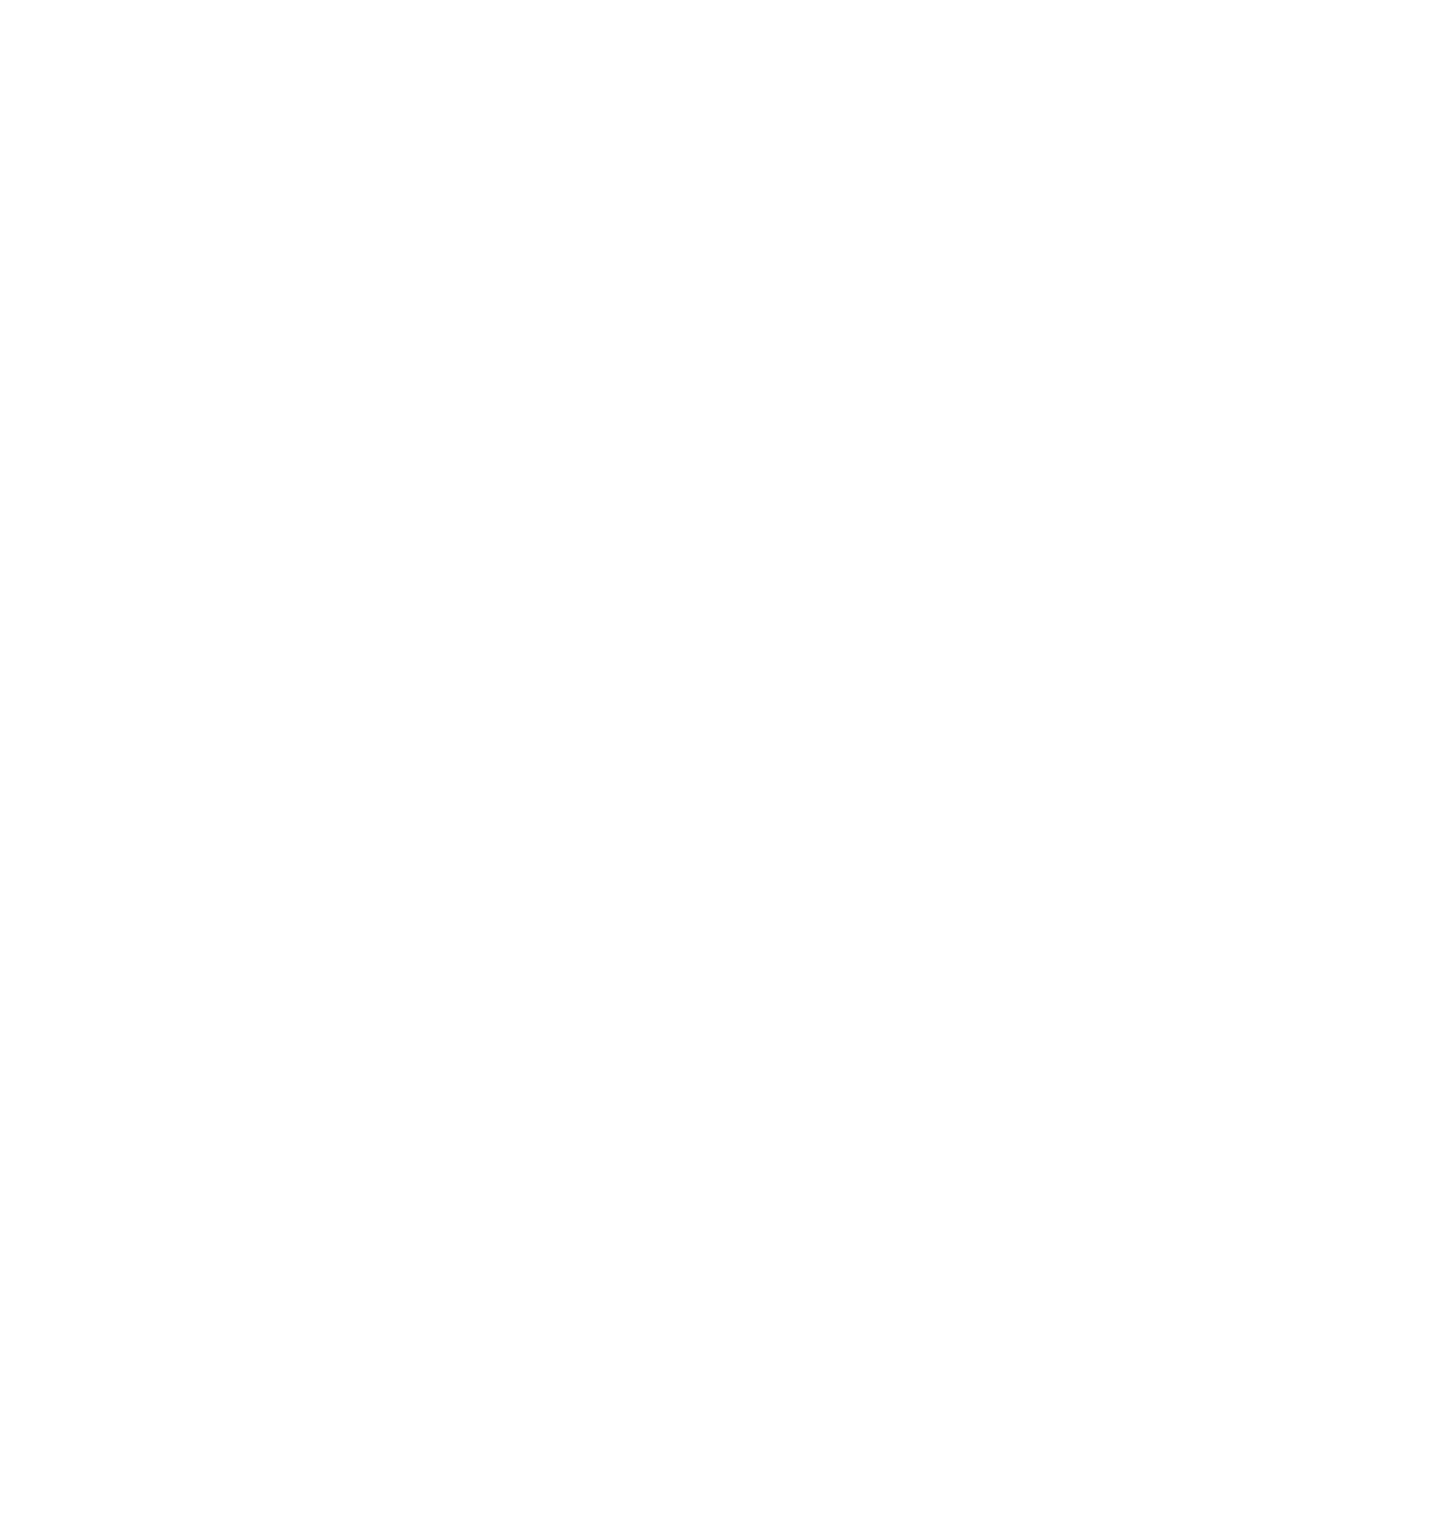 Petros Pharmaceuticals logo pour fonds sombres (PNG transparent)